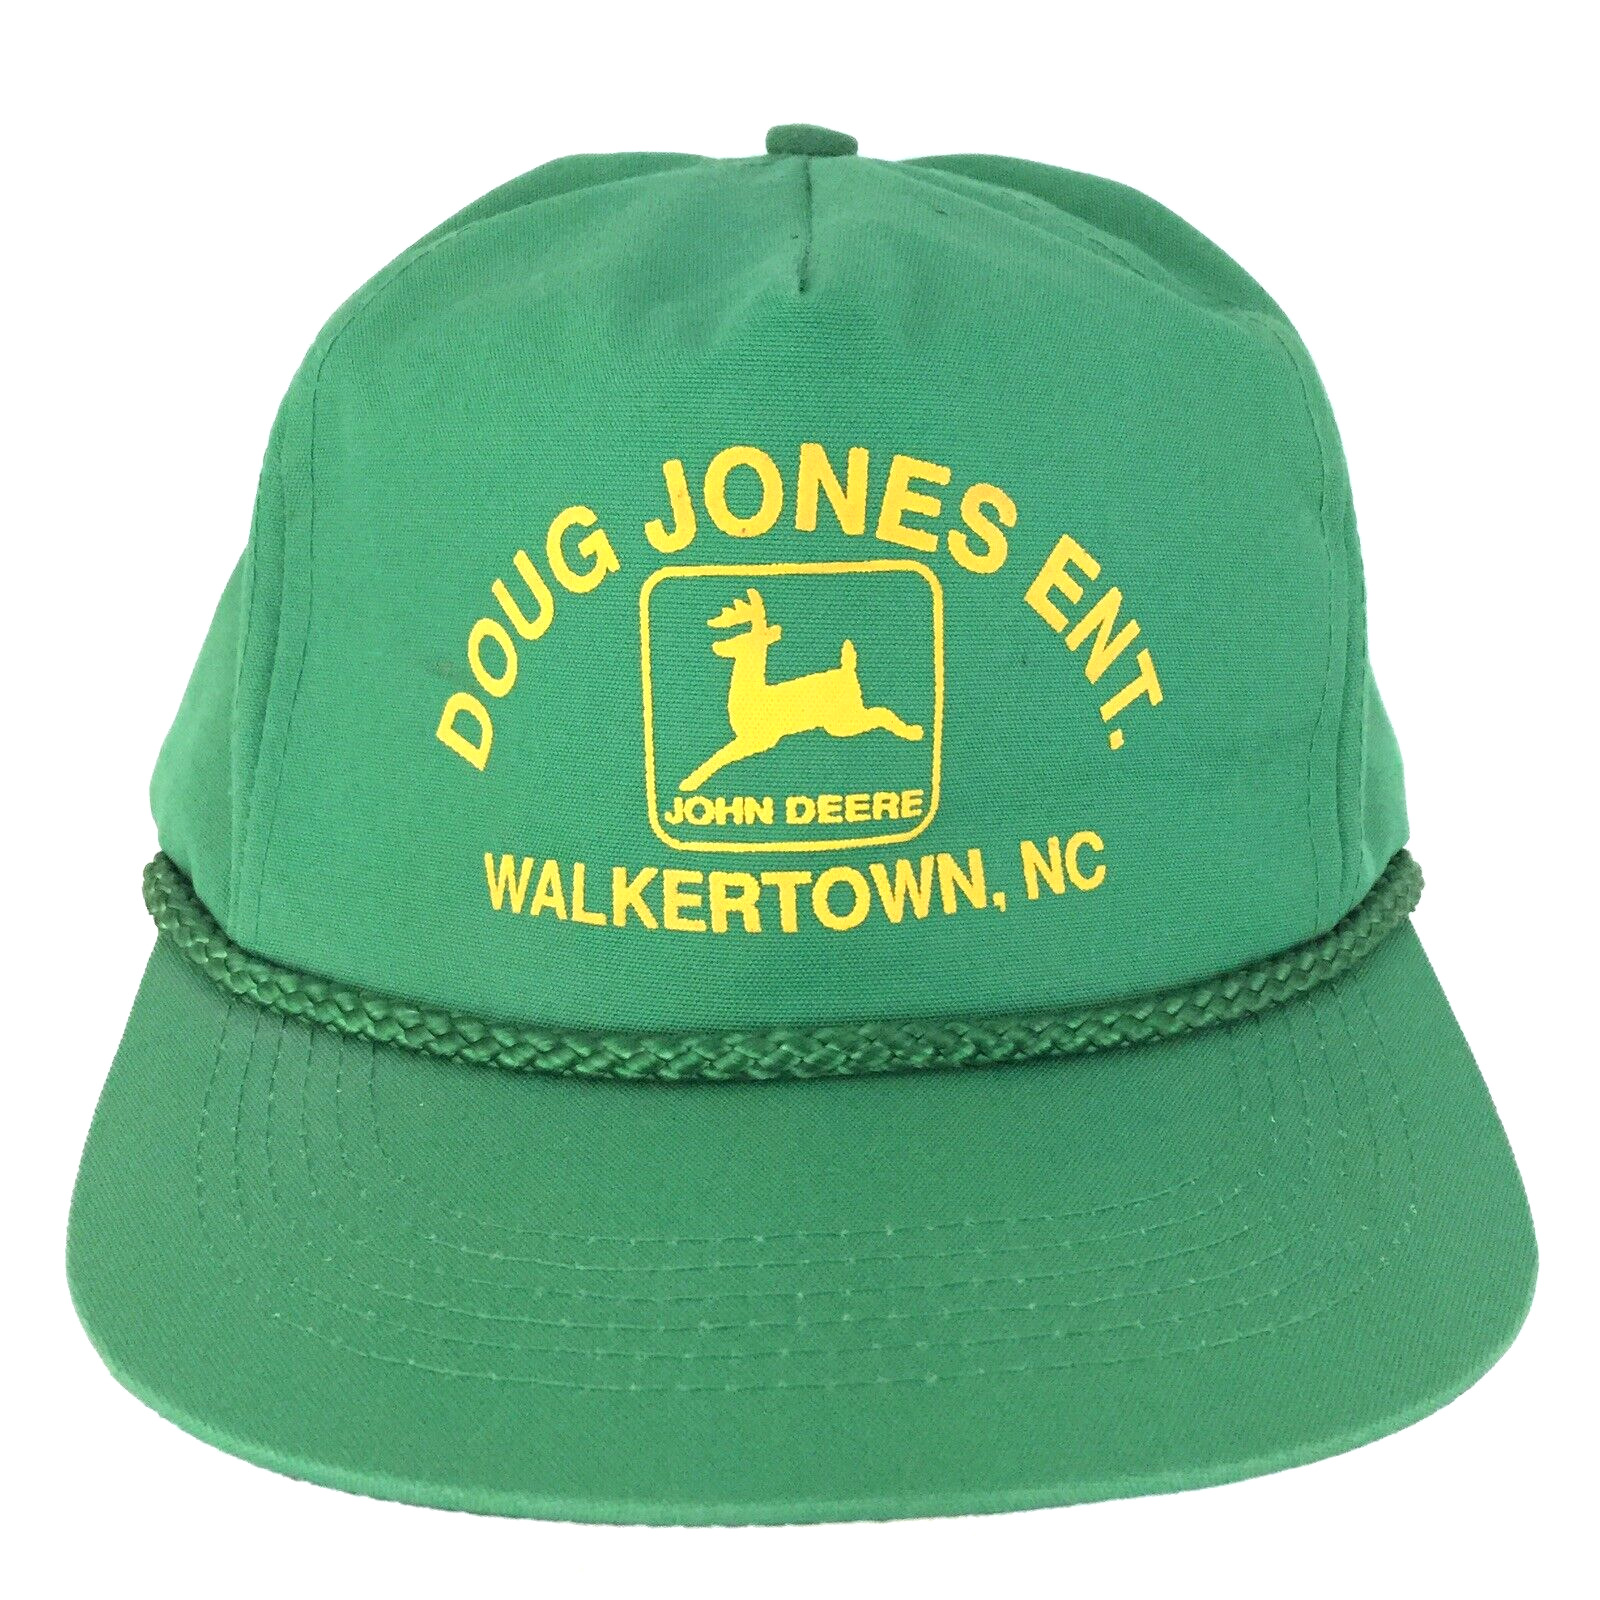 Vtg John Deere Logo Hat Doug Jones Farming Trucker Tractor Walkertown NC Dad Cap